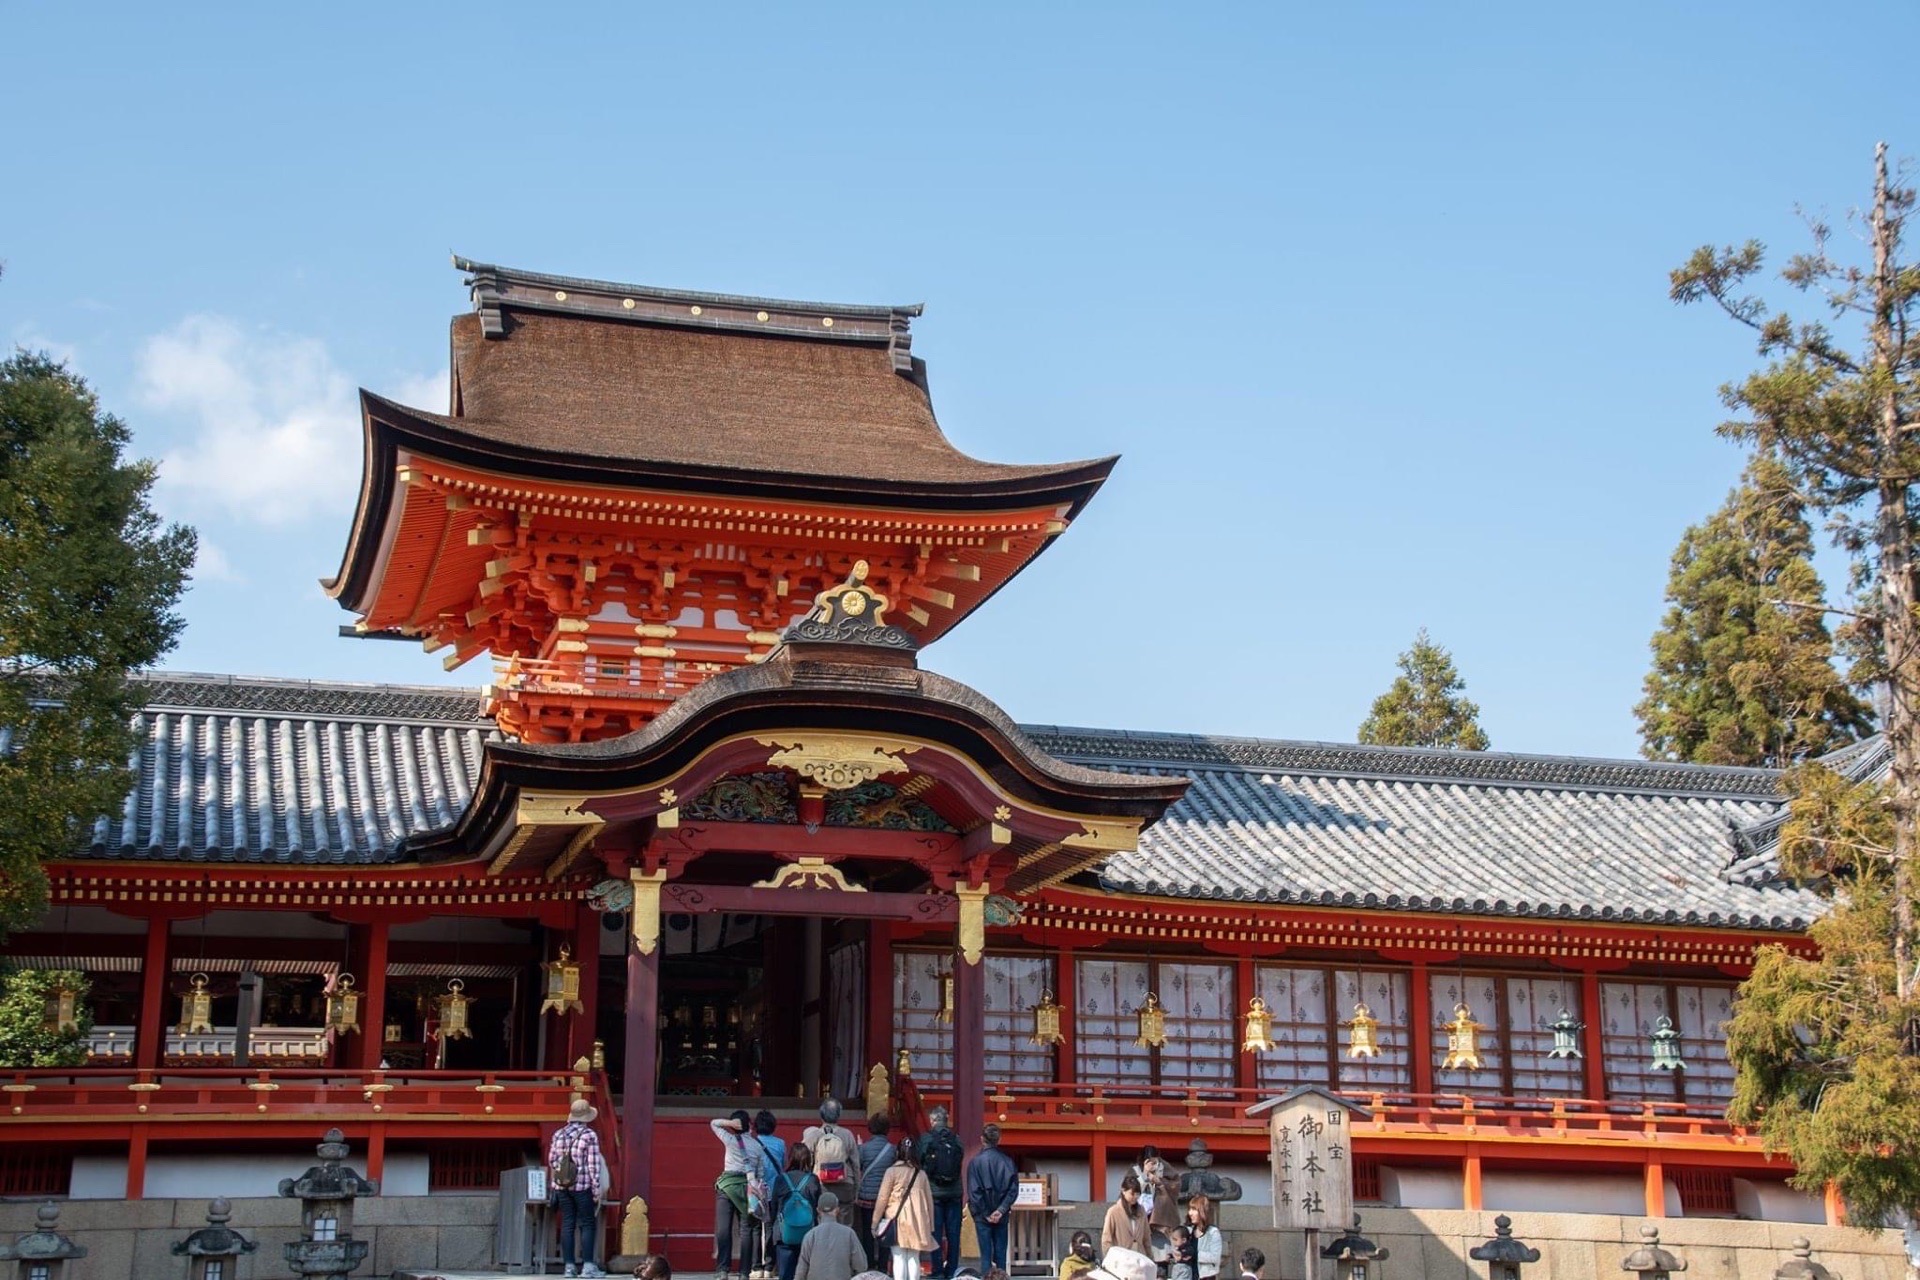 【京都· 播州清水寺】  播州清水寺不是京都市内的清水寺。但是两个清水寺都属于西国三十三所观音。一个